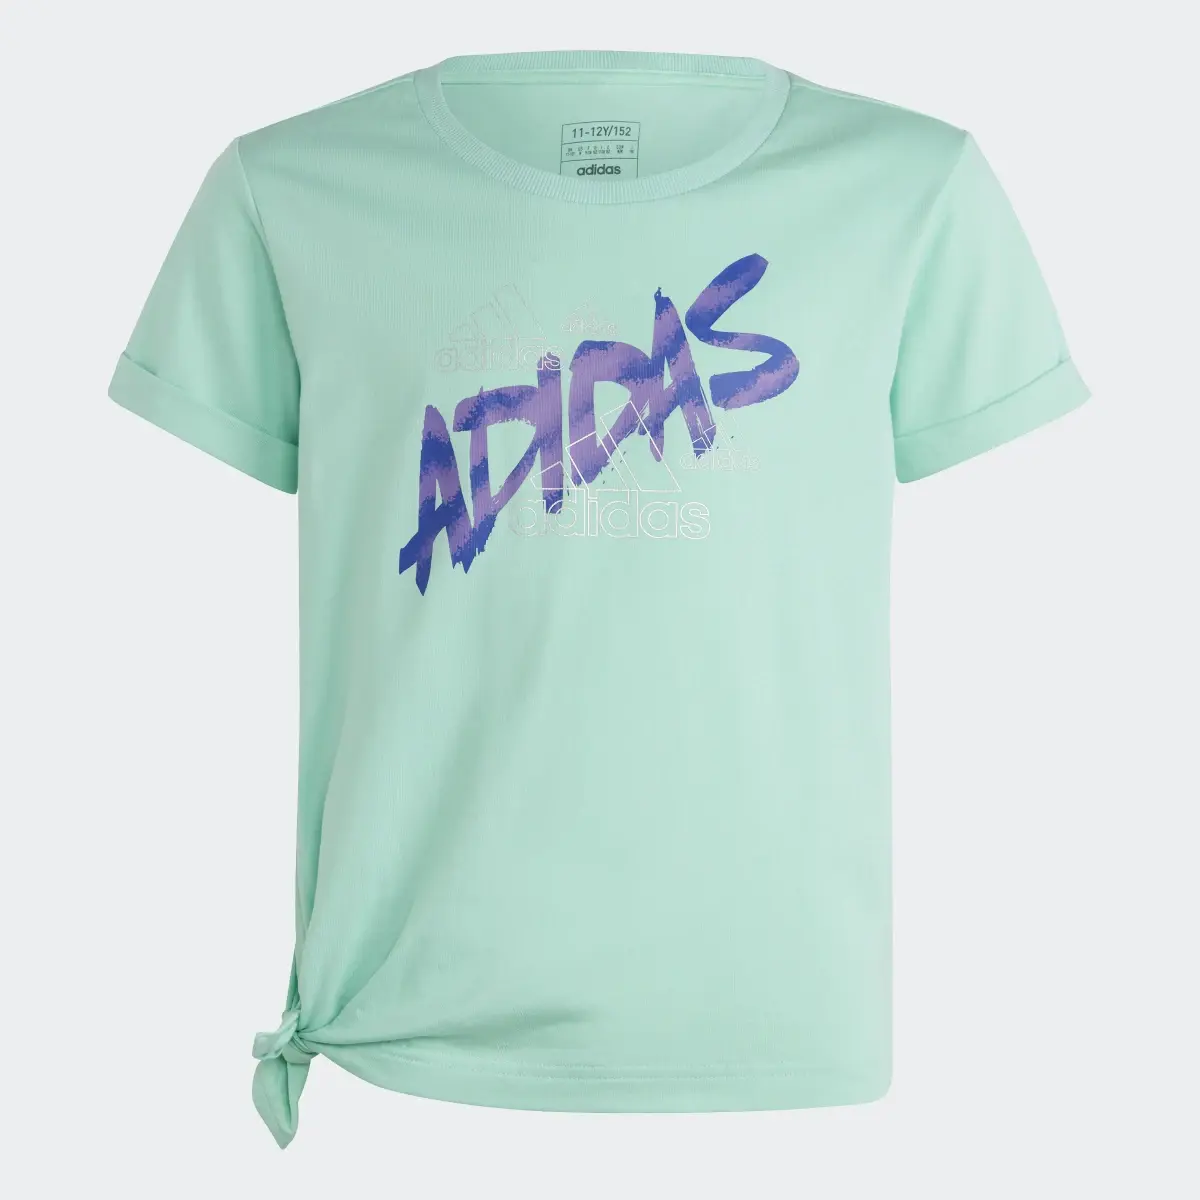 Adidas T-shirt Dance. 1